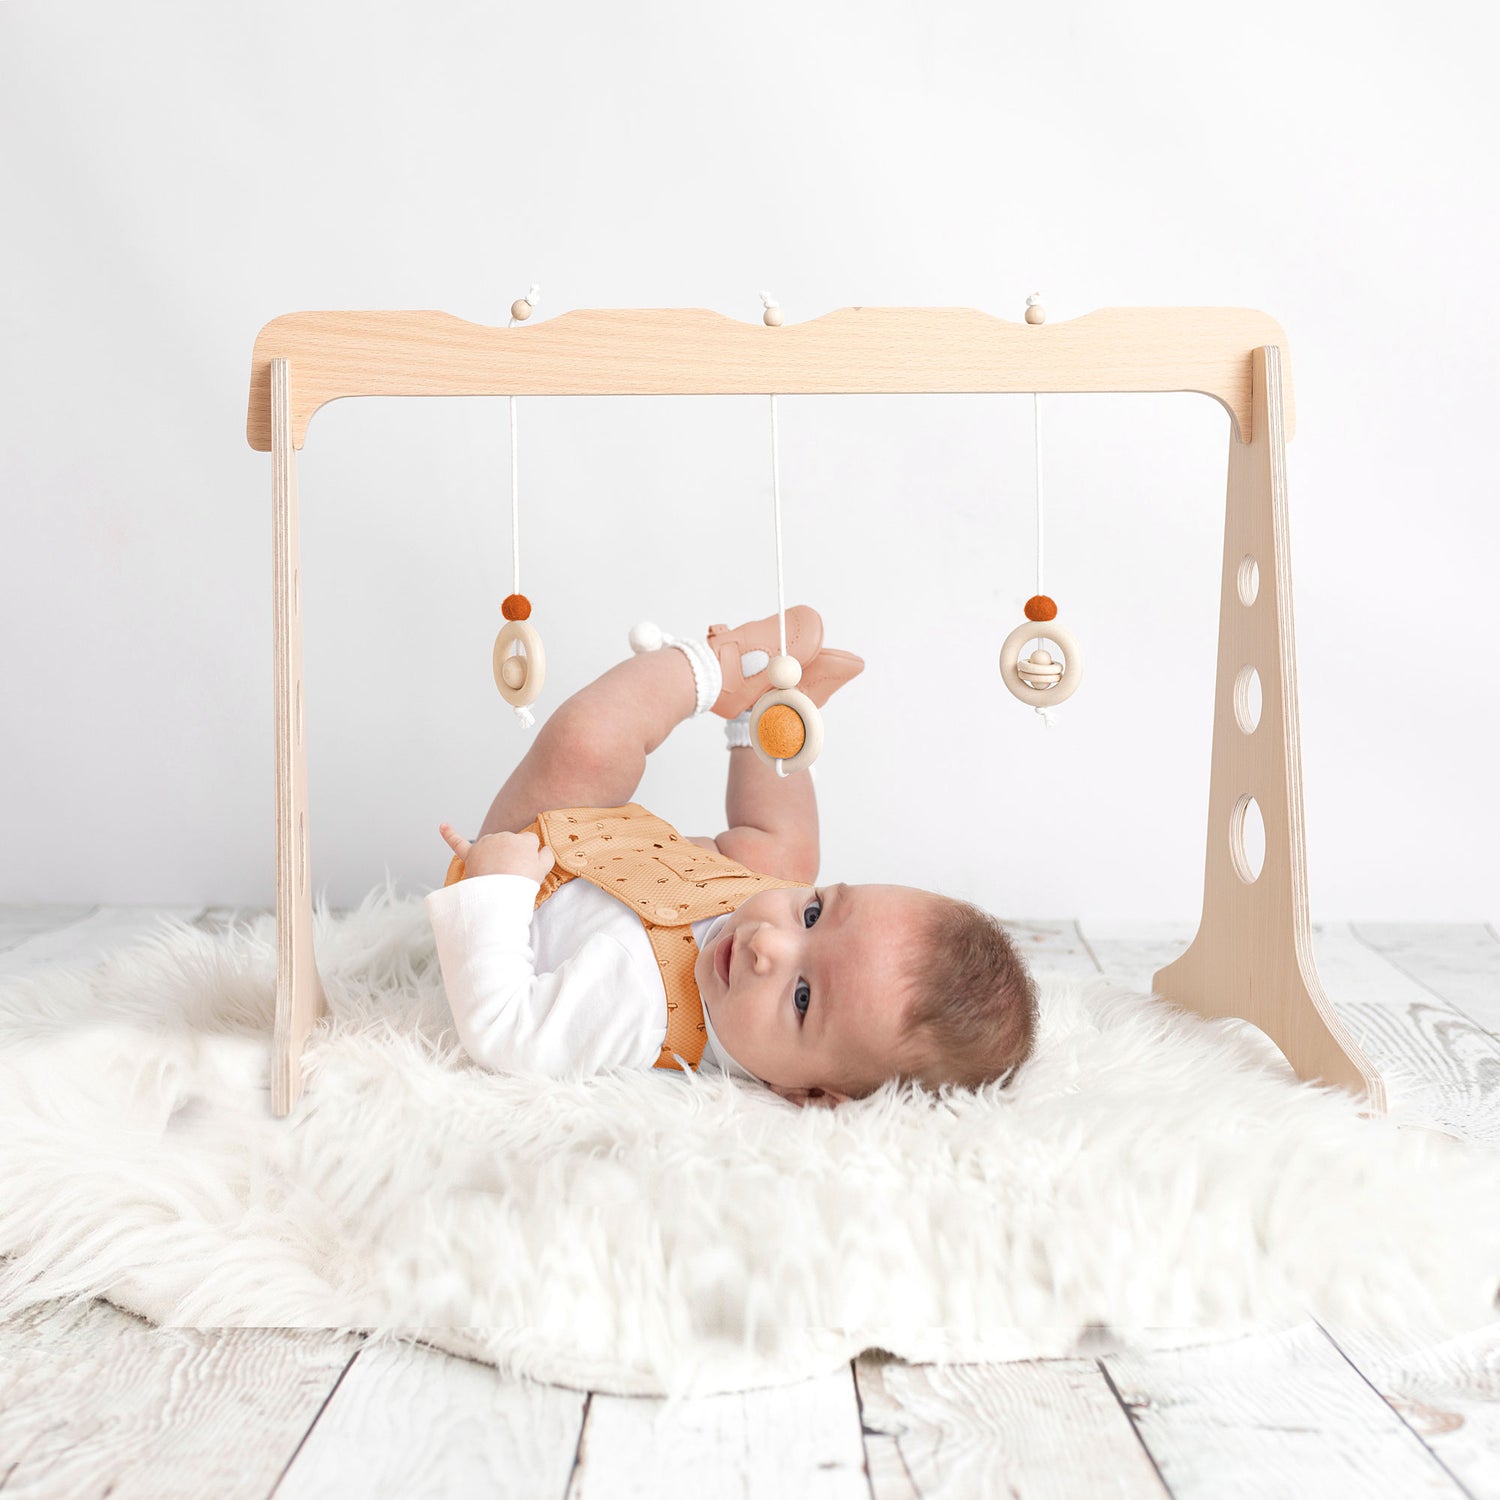 Bebé jugando con un gimnasio para bebés de madera de 3 colgantes de la marca ChinPum